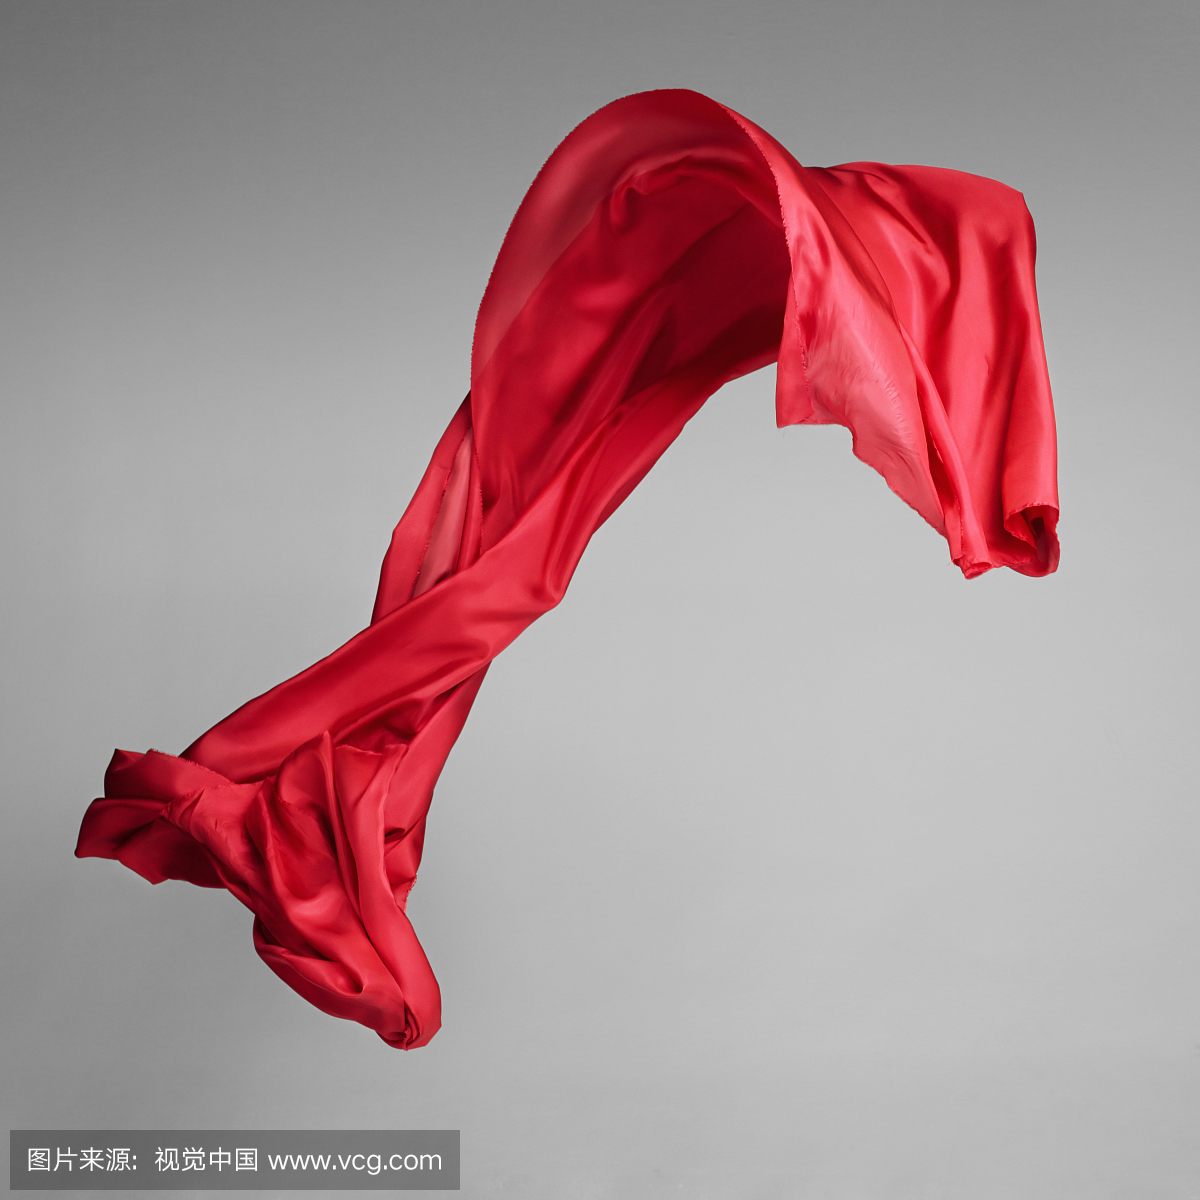 红丝绸围巾吹风